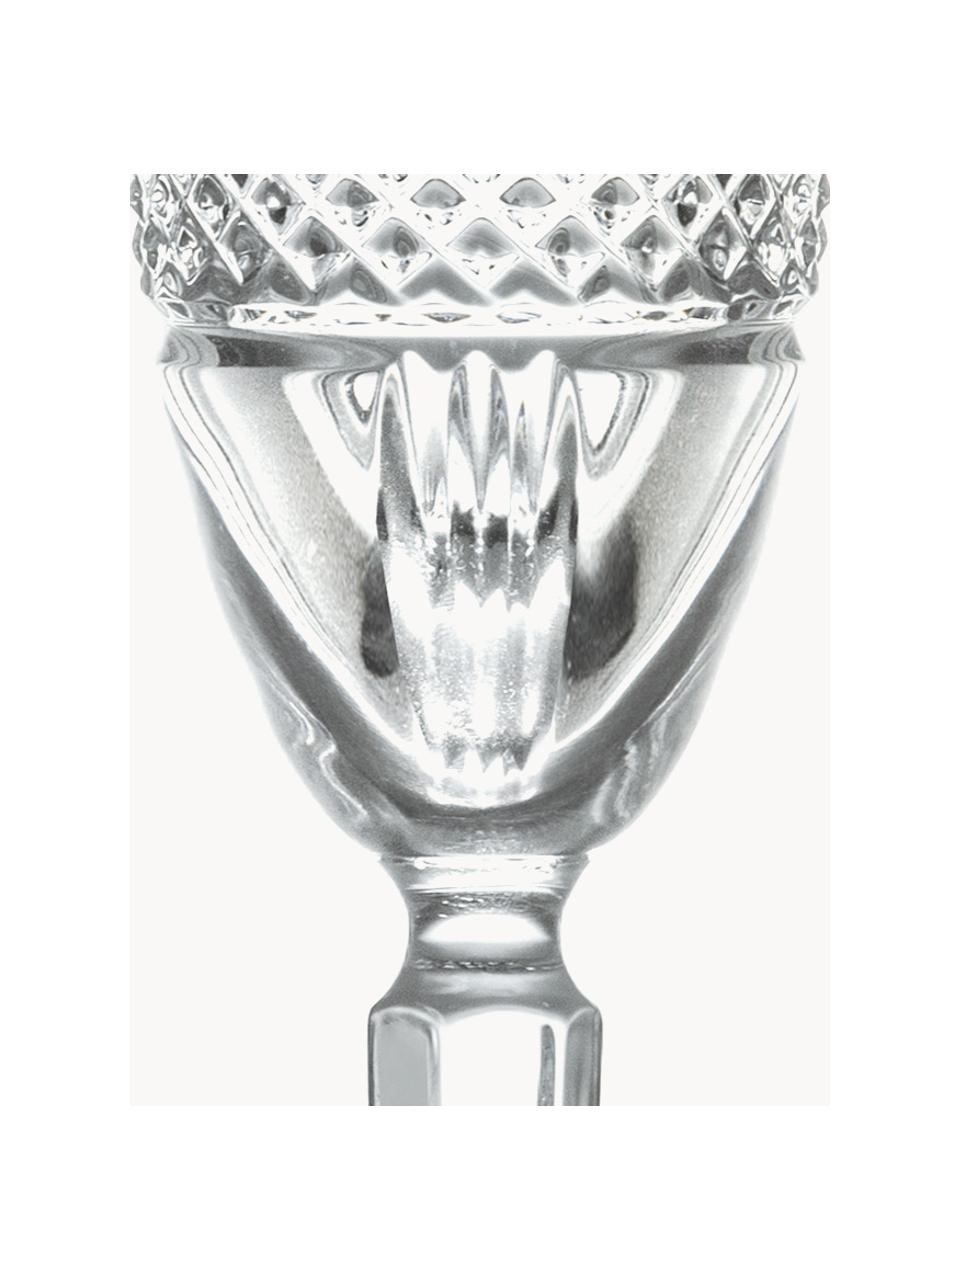 Křišťálová sklenice na sekt Brillante, 6 ks, Křišťál, Transparentní, Ø 6 cm, V 23 cm, 180 ml